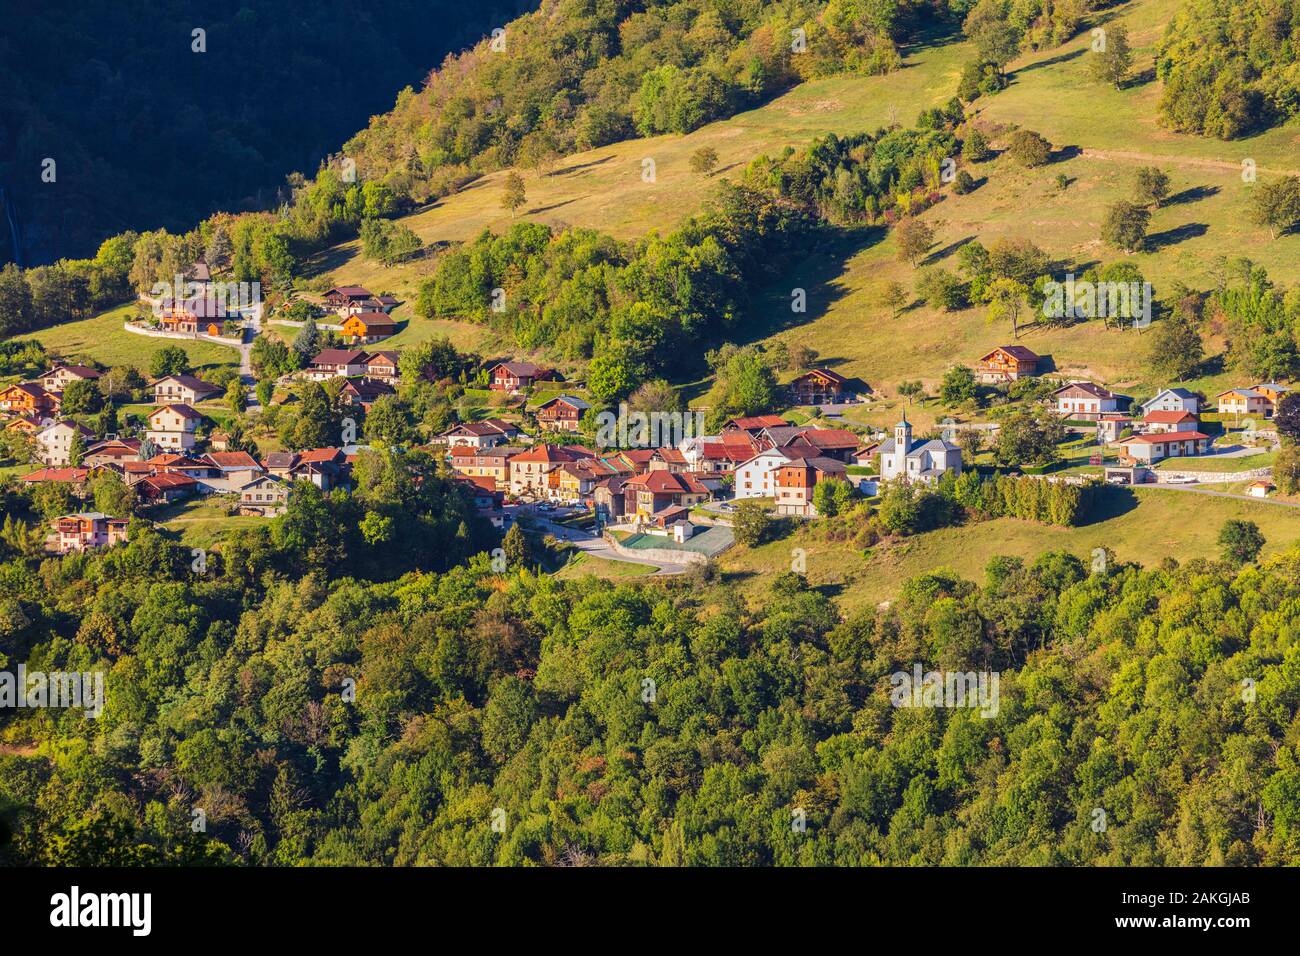 France, Savoie, Grand-Aigueblanche, Saint Oyen, Tarentaise valley Stock Photo